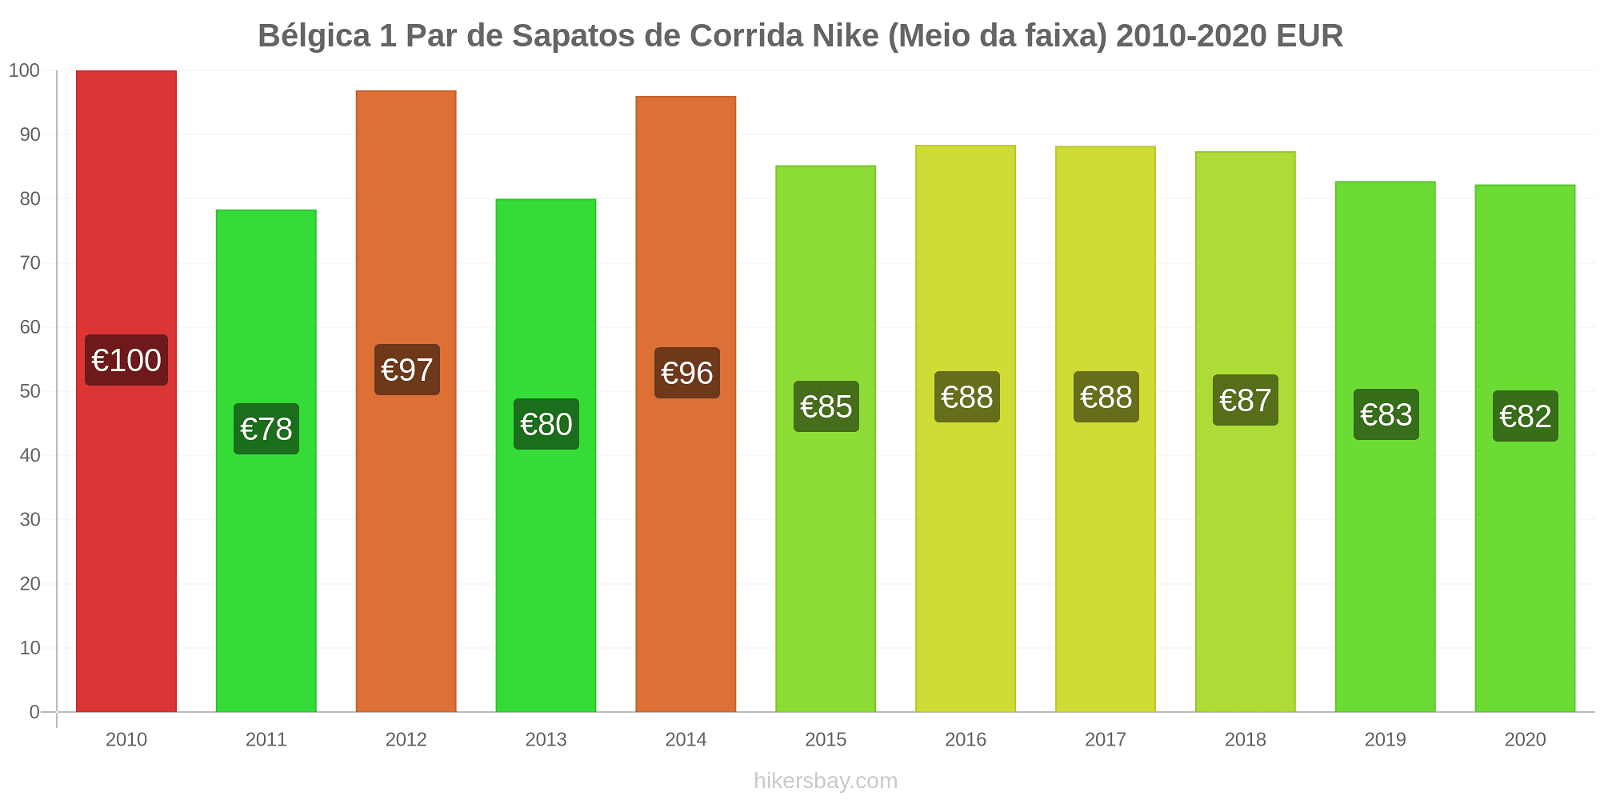 Bélgica variação de preço 1 par de tênis Nike (mid-range) hikersbay.com